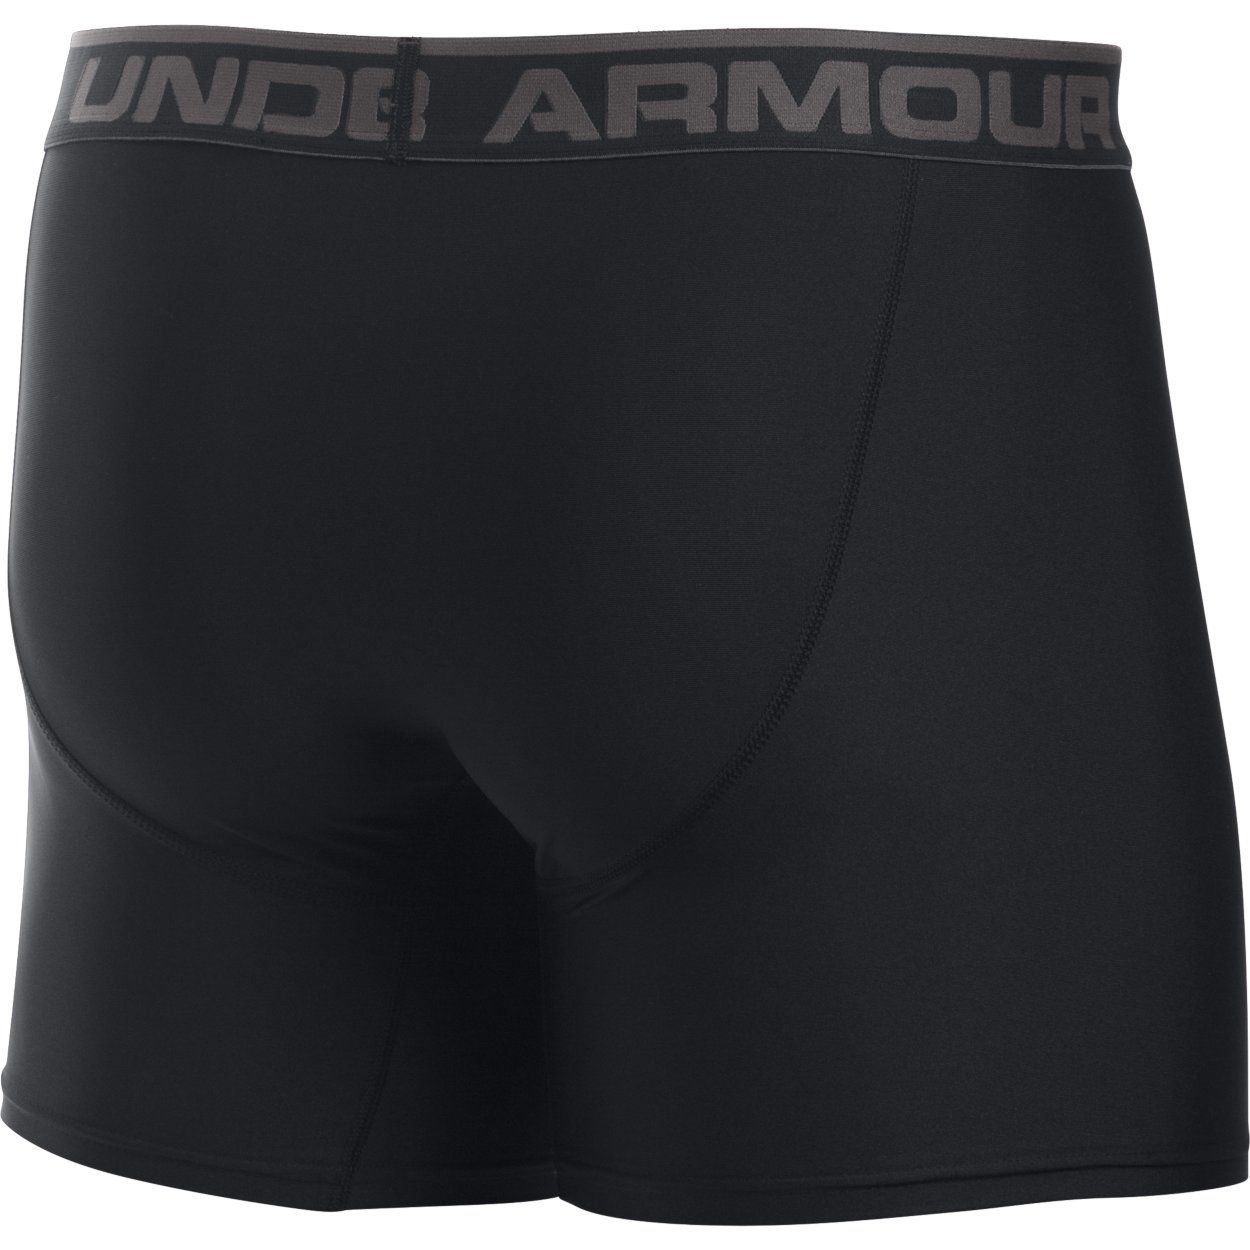 Underwear -  under armour Original Series 6 Boxerjock 7238